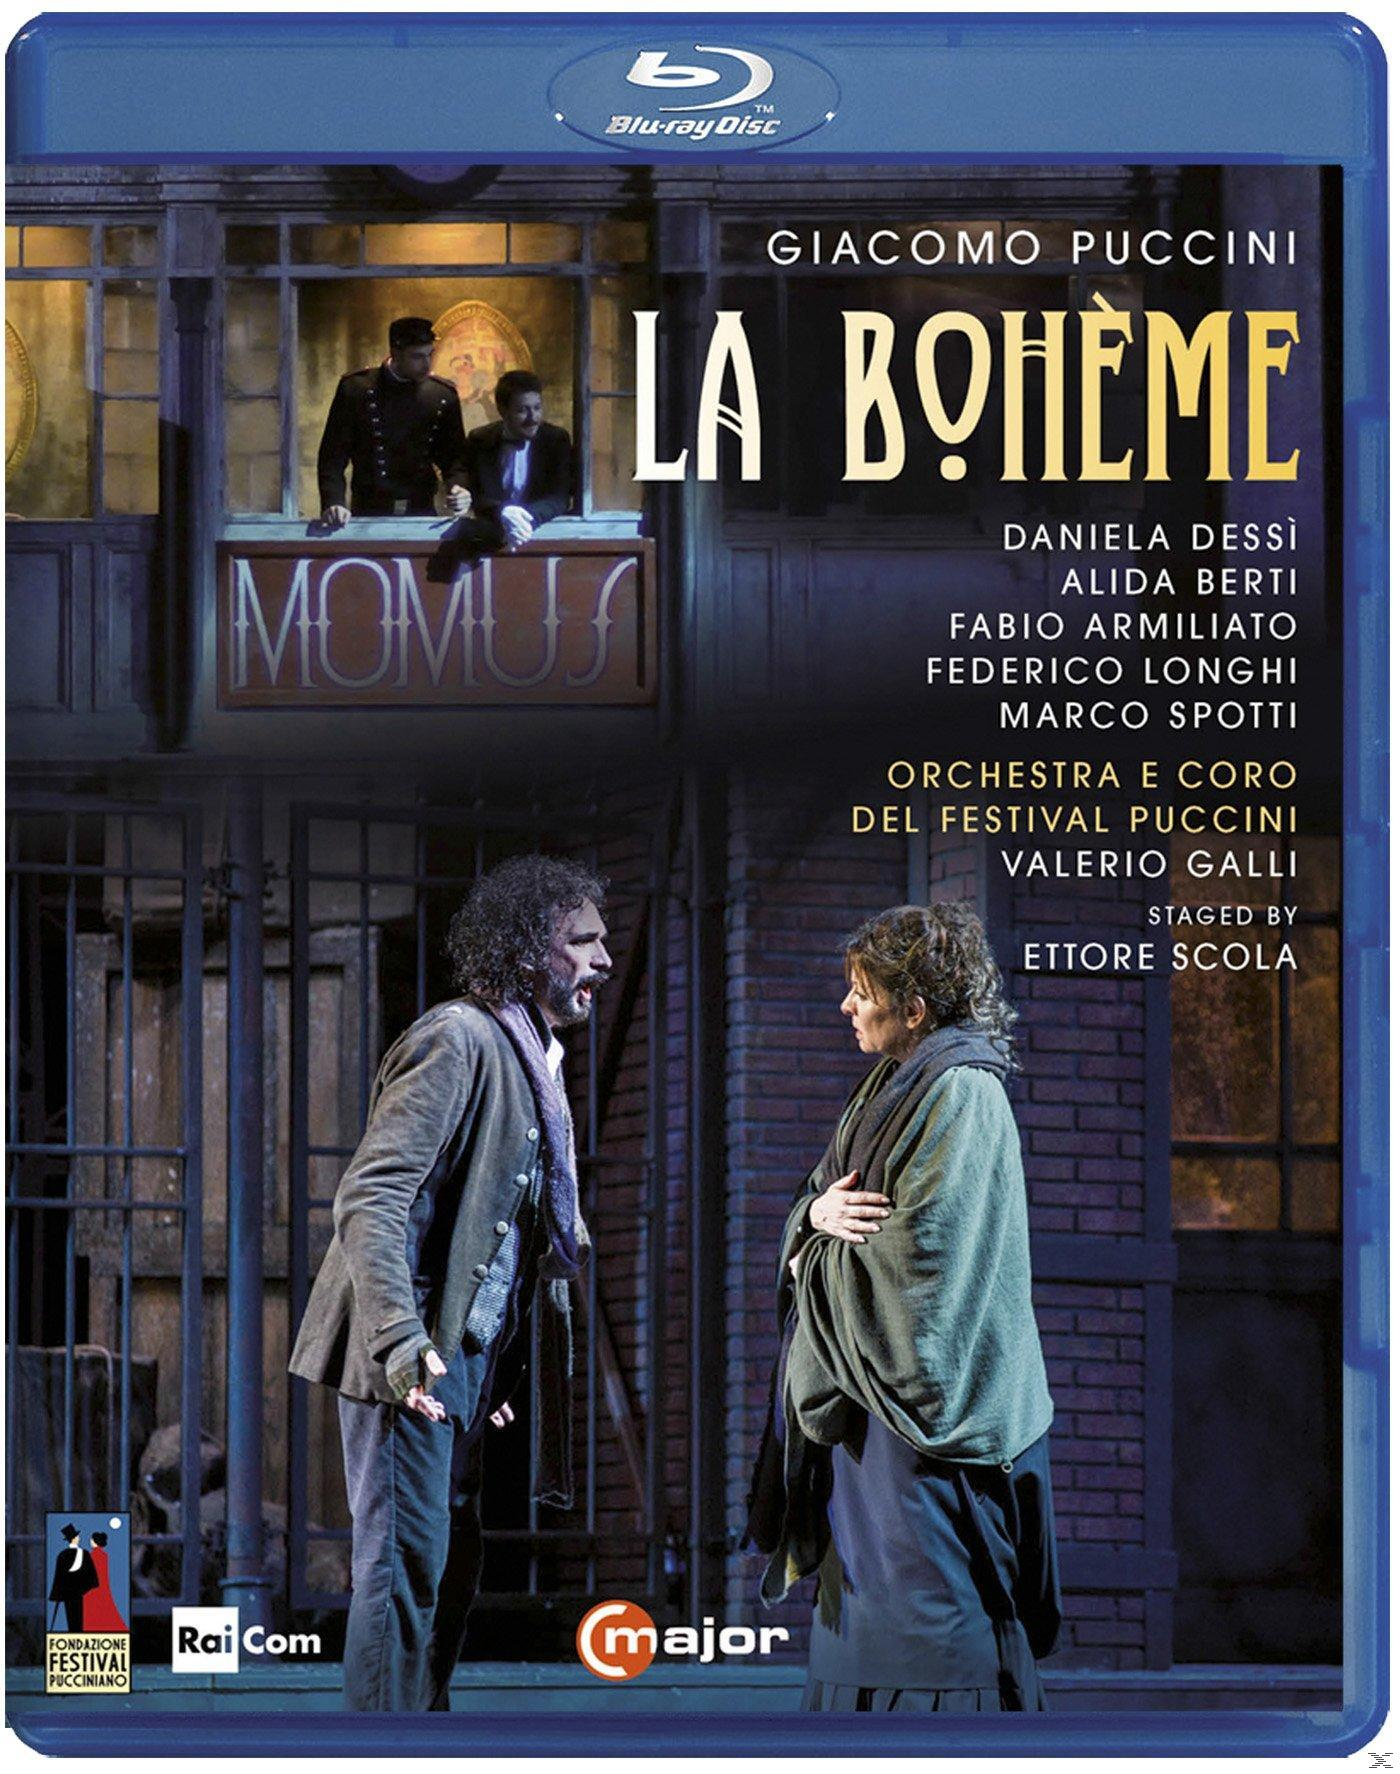 VARIOUS, Orchestra - Del Puccini - Boheme (Blu-ray) La Festival